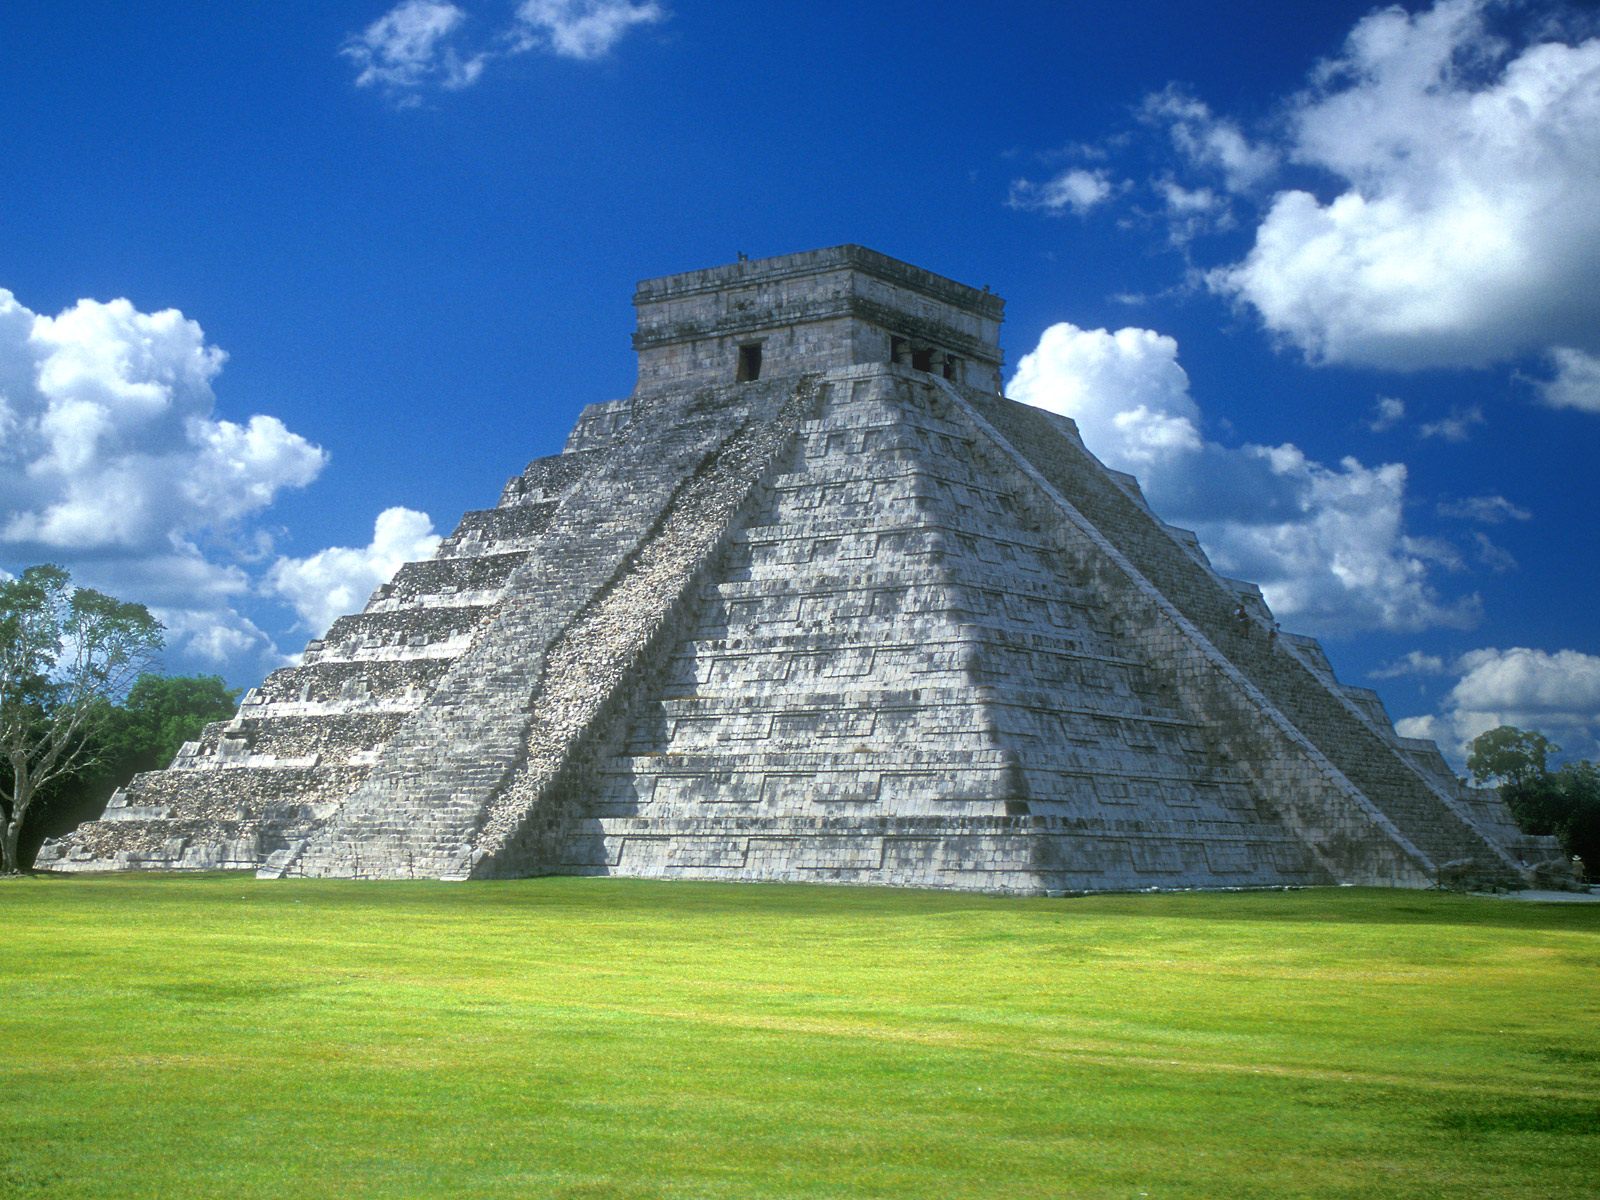 Pyramid of Mexico5397615984 - Pyramid of Mexico - Texas, Pyramid, Mexico